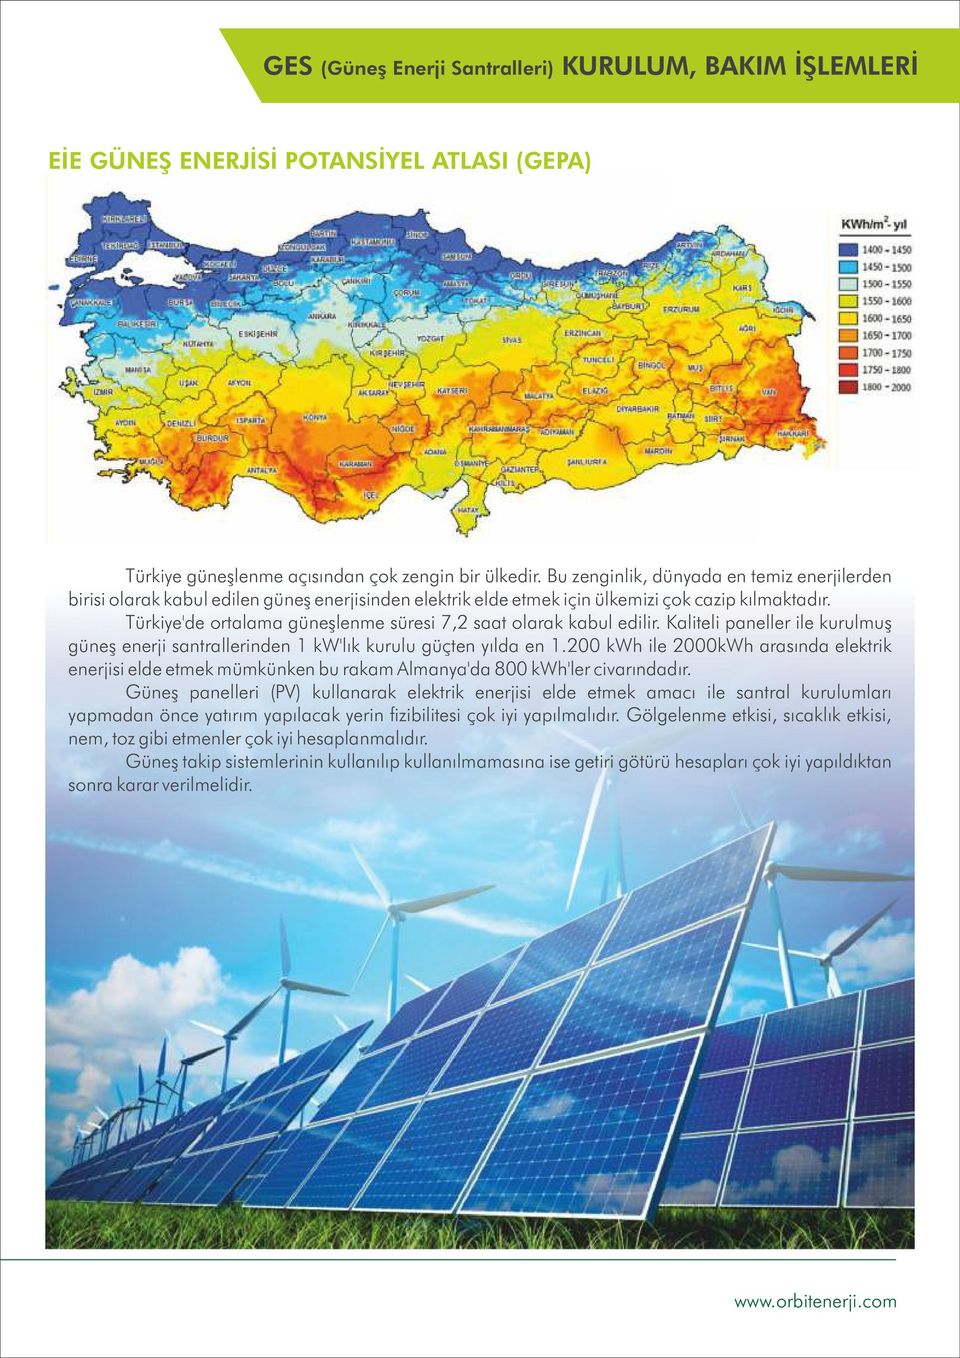 Türkiye'de ortalama güneşlenme süresi 7,2 saat olarak kabul edilir. Kaliteli paneller ile kurulmuş güneş enerji santrallerinden 1 kw'lık kurulu güçten yılda en 1.